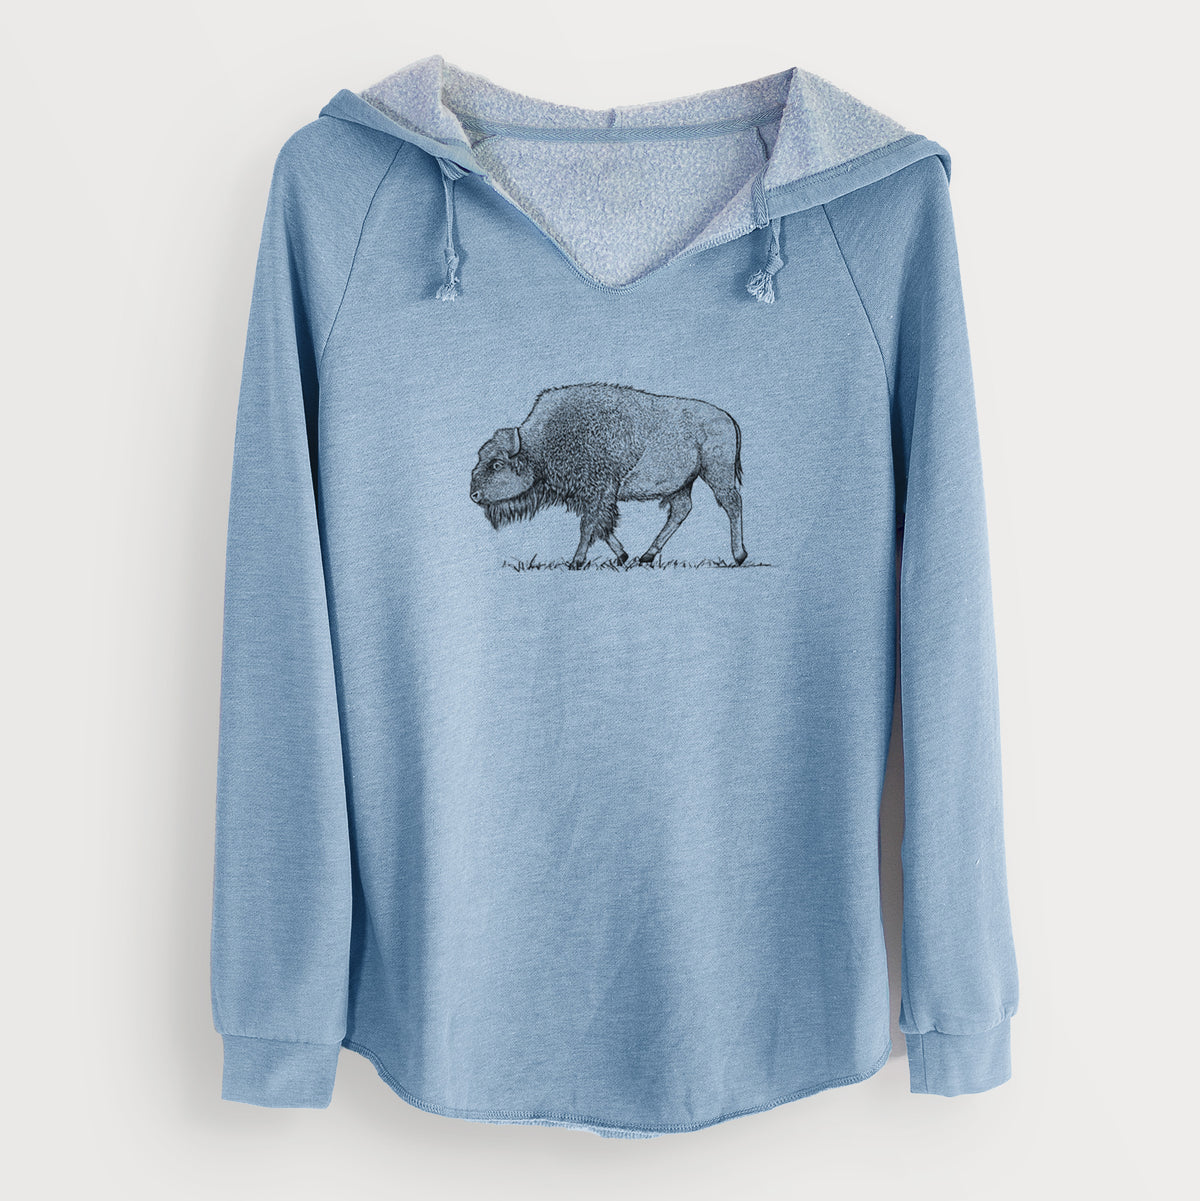 American Bison / Buffalo - Bison bison - Cali Wave Hooded Sweatshirt